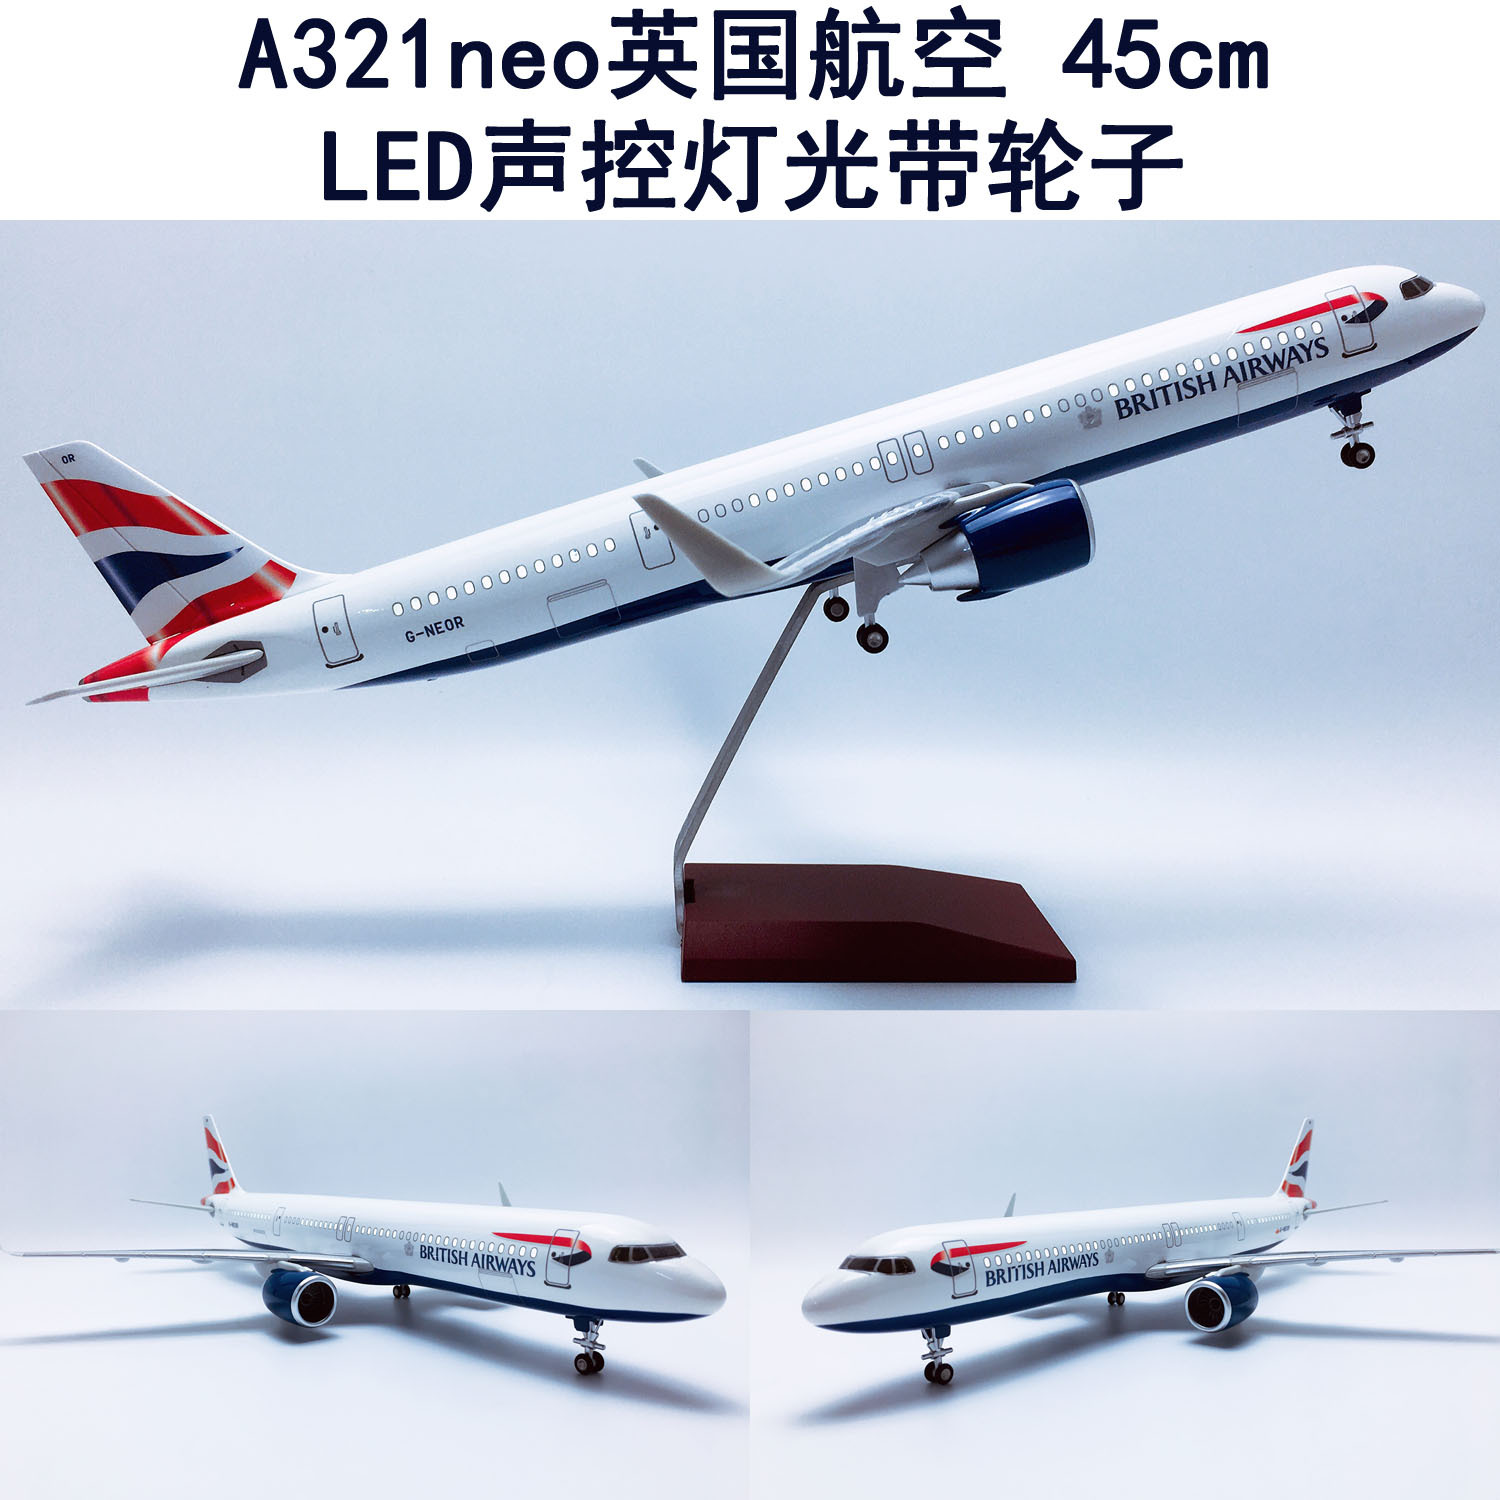 升级版45cm声控LED灯带轮子A321neo飞机模型航模A321neo英国航空